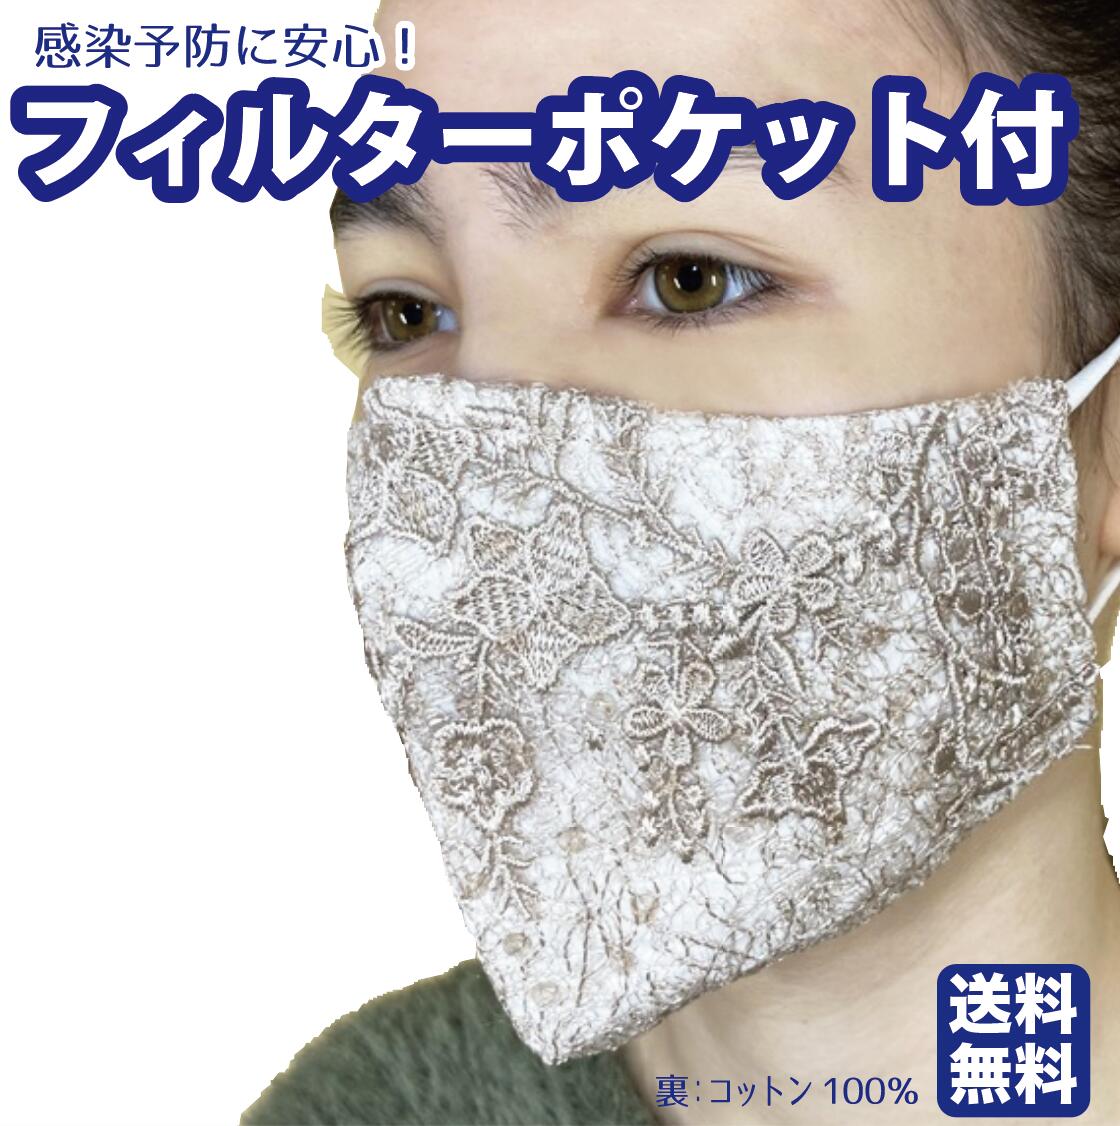 【ポイント消費】送料無料 フィルターポケット付き マスク 3